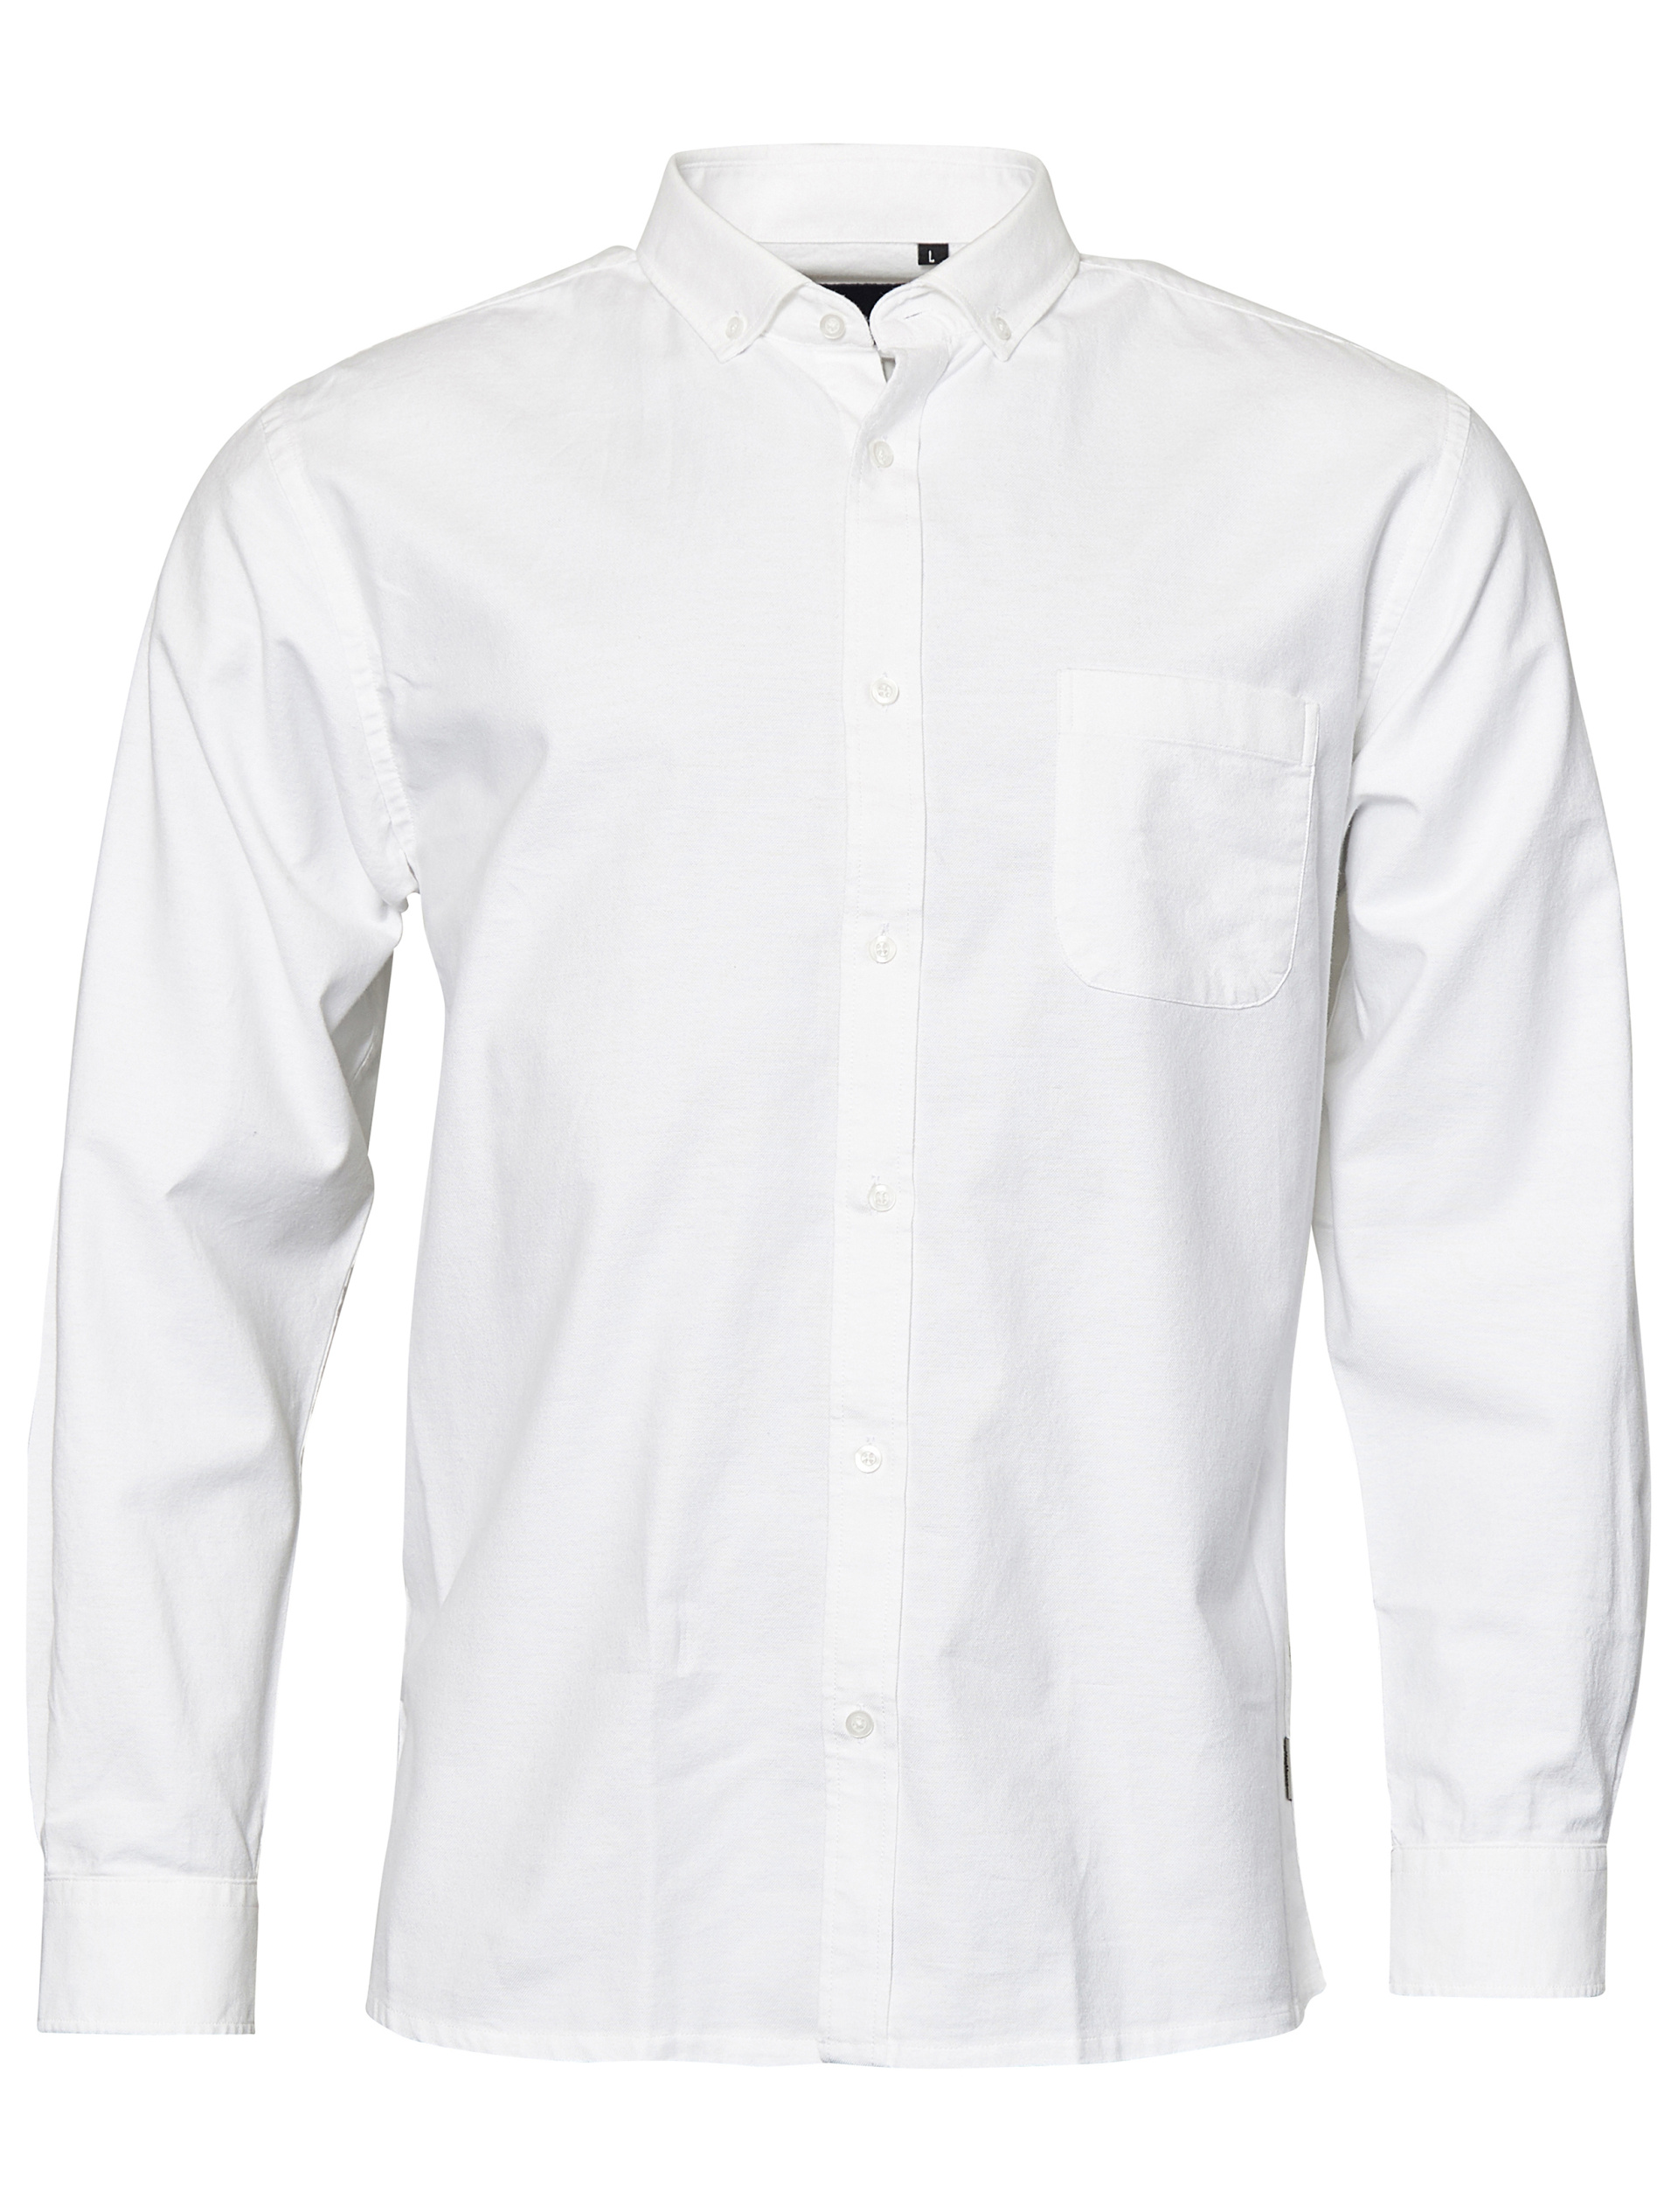 North Casual skjorte hvid / 000 white